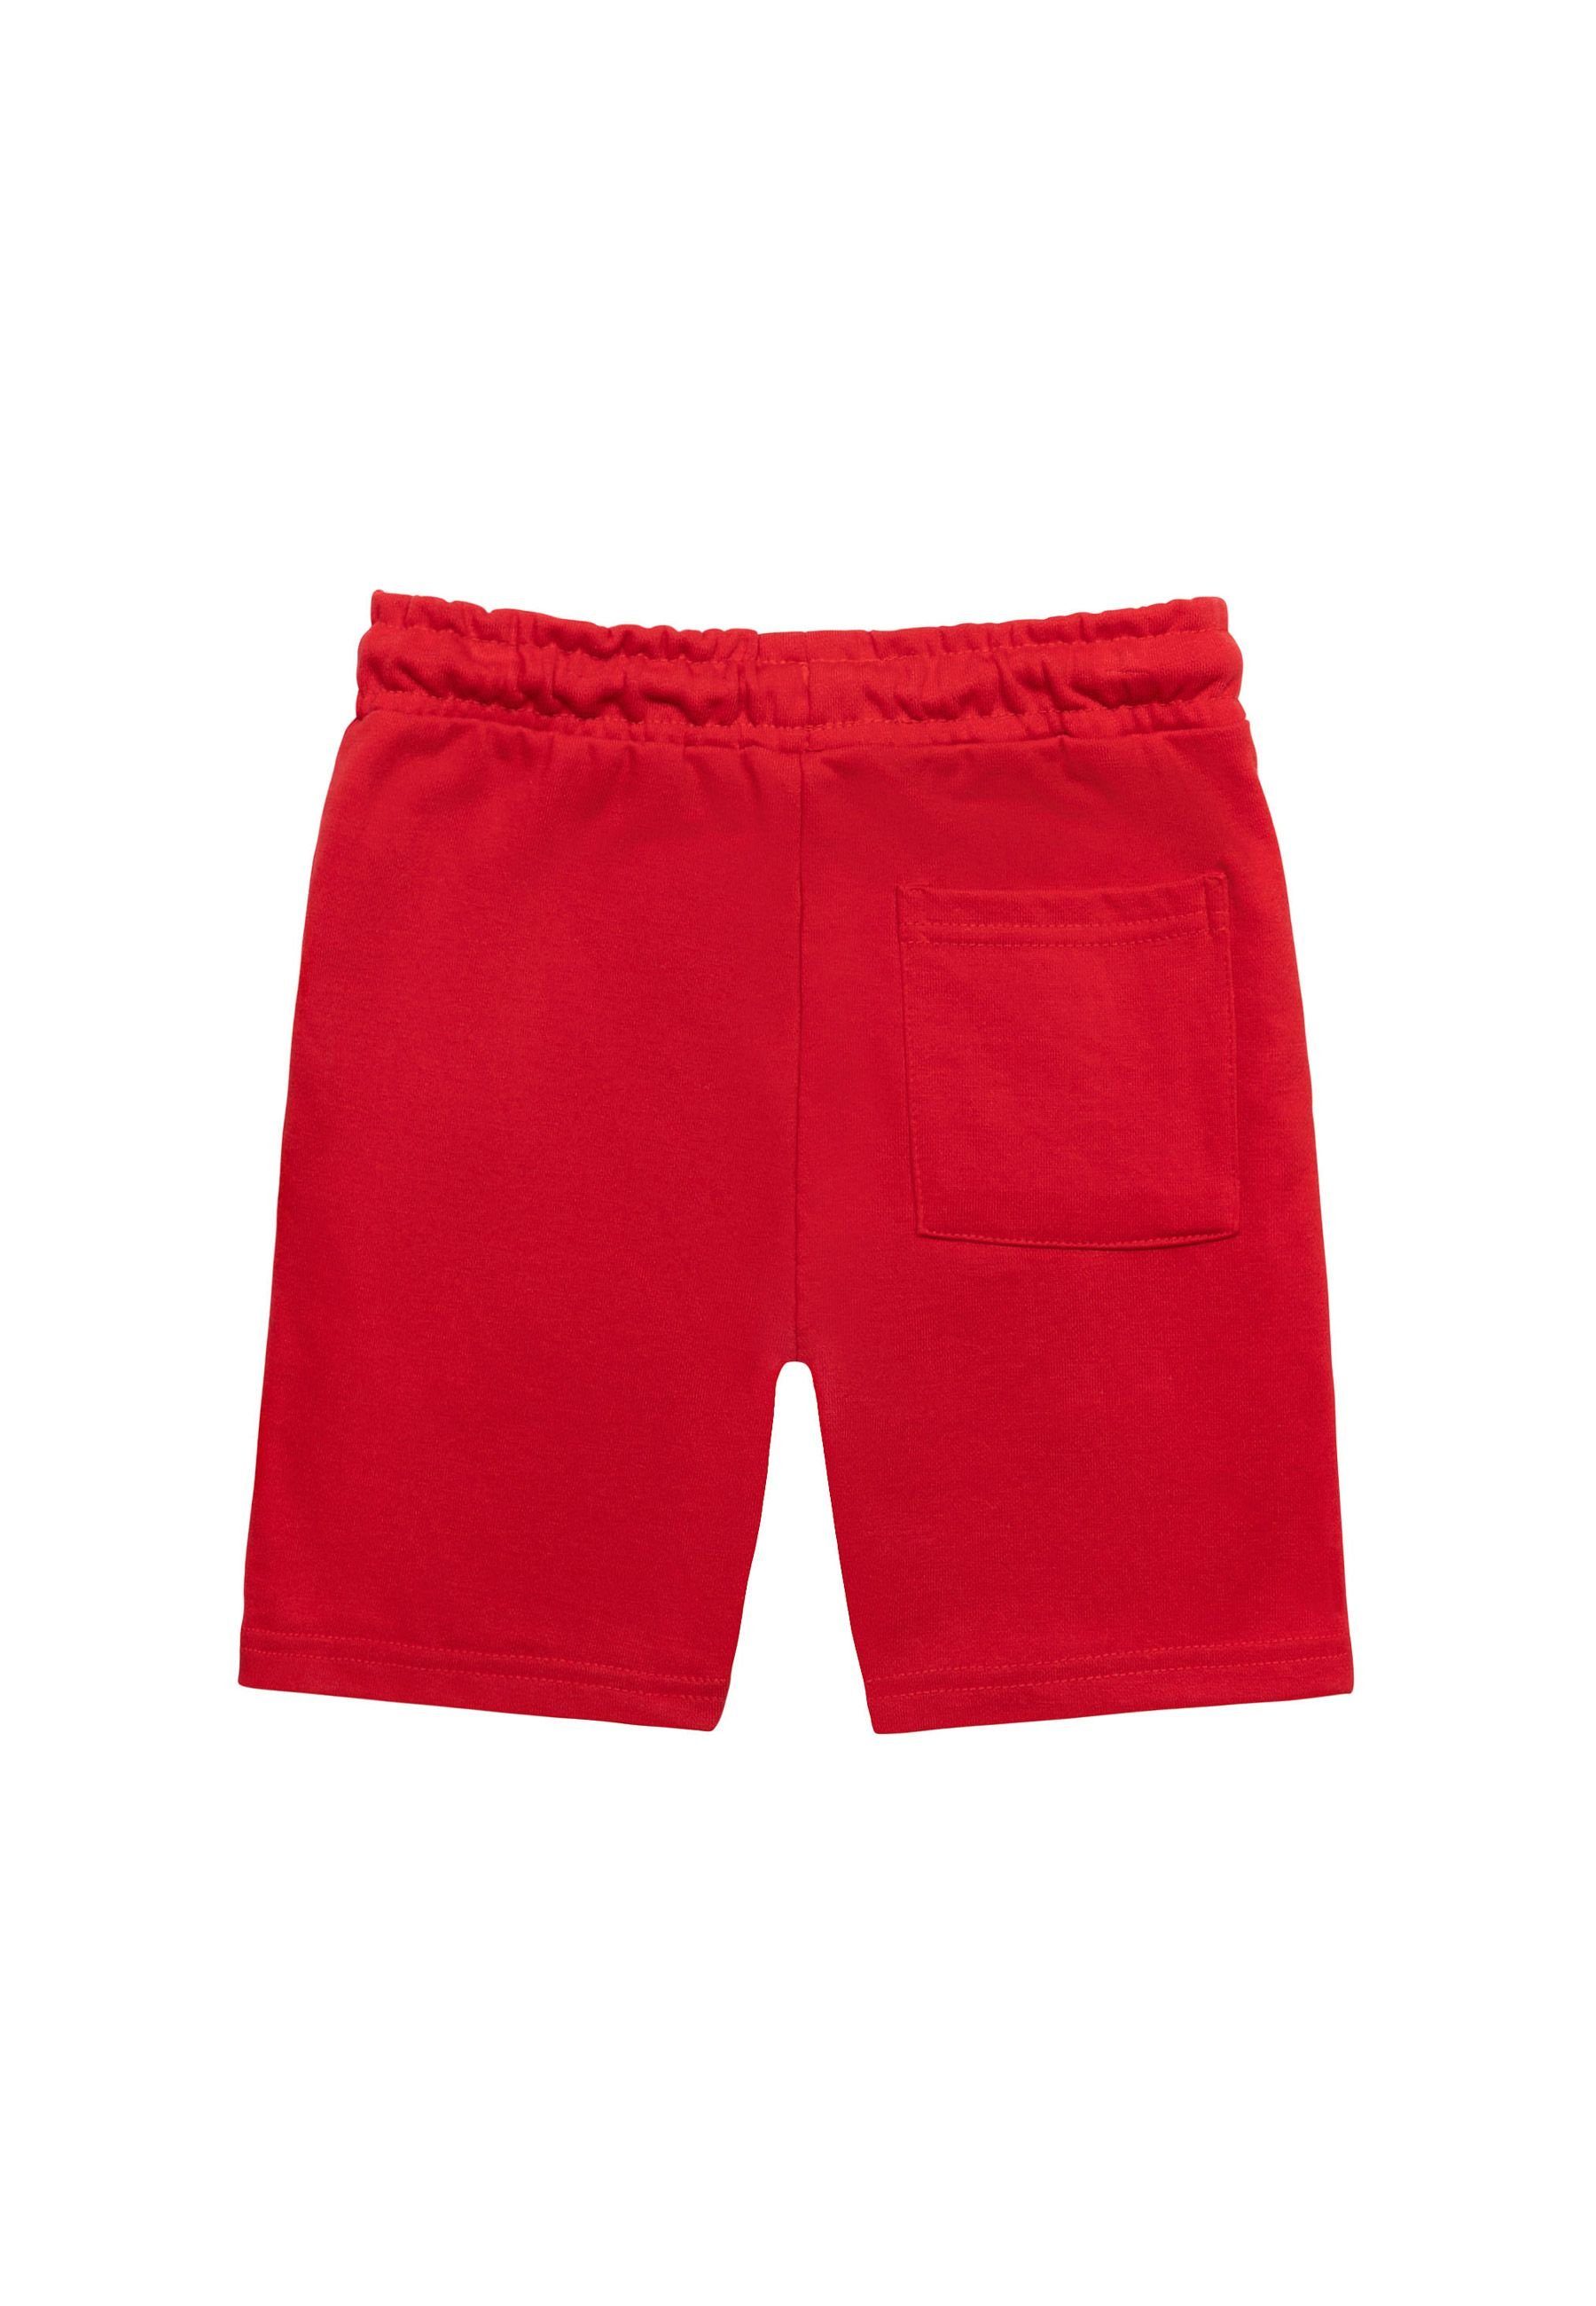 Aufschrift (1y-14y) mit MINOTI Rot Sweatshorts Shorts